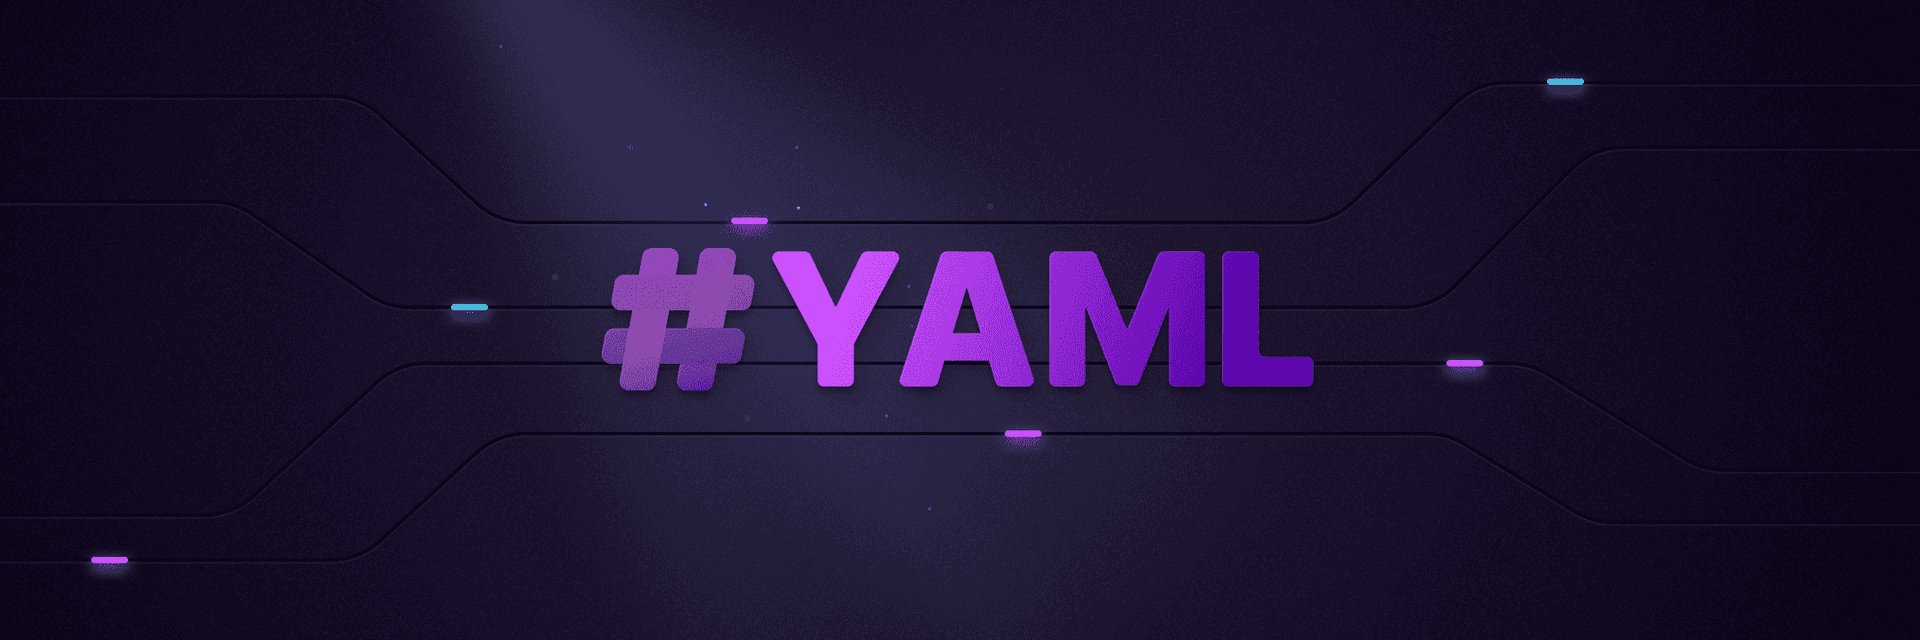 Blog: Dynamic YAML definitions